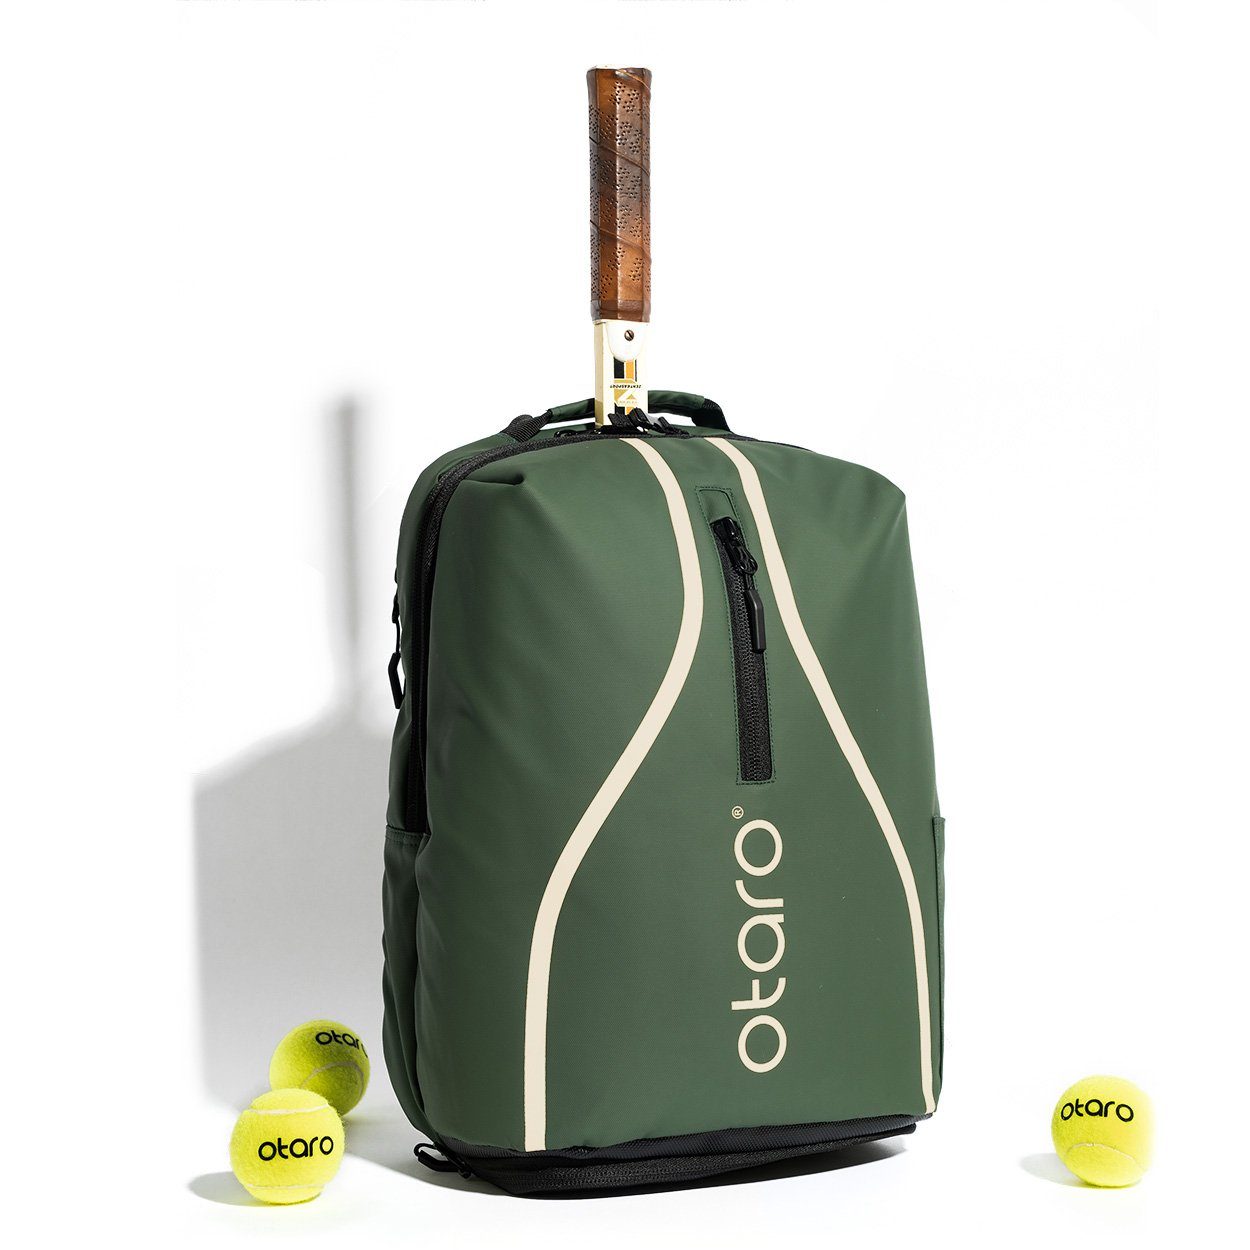 Otaro Tennisrucksack Tennisrucksack mit Schuhfach, Classic 32L (Innovative Tennistasche, Perfekt durchdacht, mit Regenschutz + Wäschebeutel, für Tennis + Badminton), Aus wasserabweisender LKW-Plane Wimbledon Grün